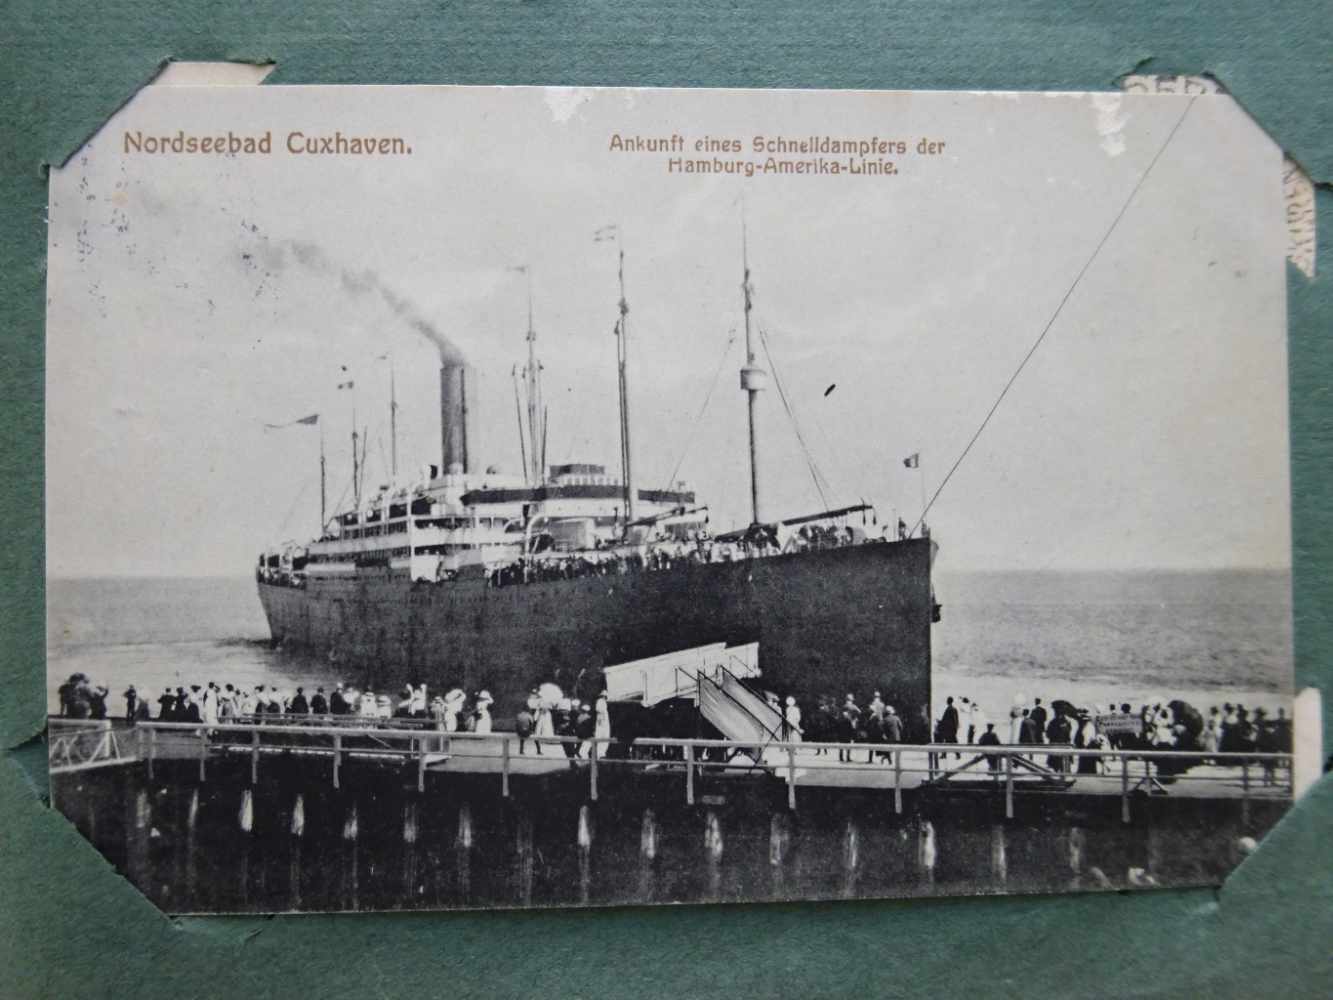 Postkarten.-208 Postkarten mit Schiffsmotiven. Meist gelaufen. Zwischen ca. 1900 und 1945. Je ca. - Image 4 of 5